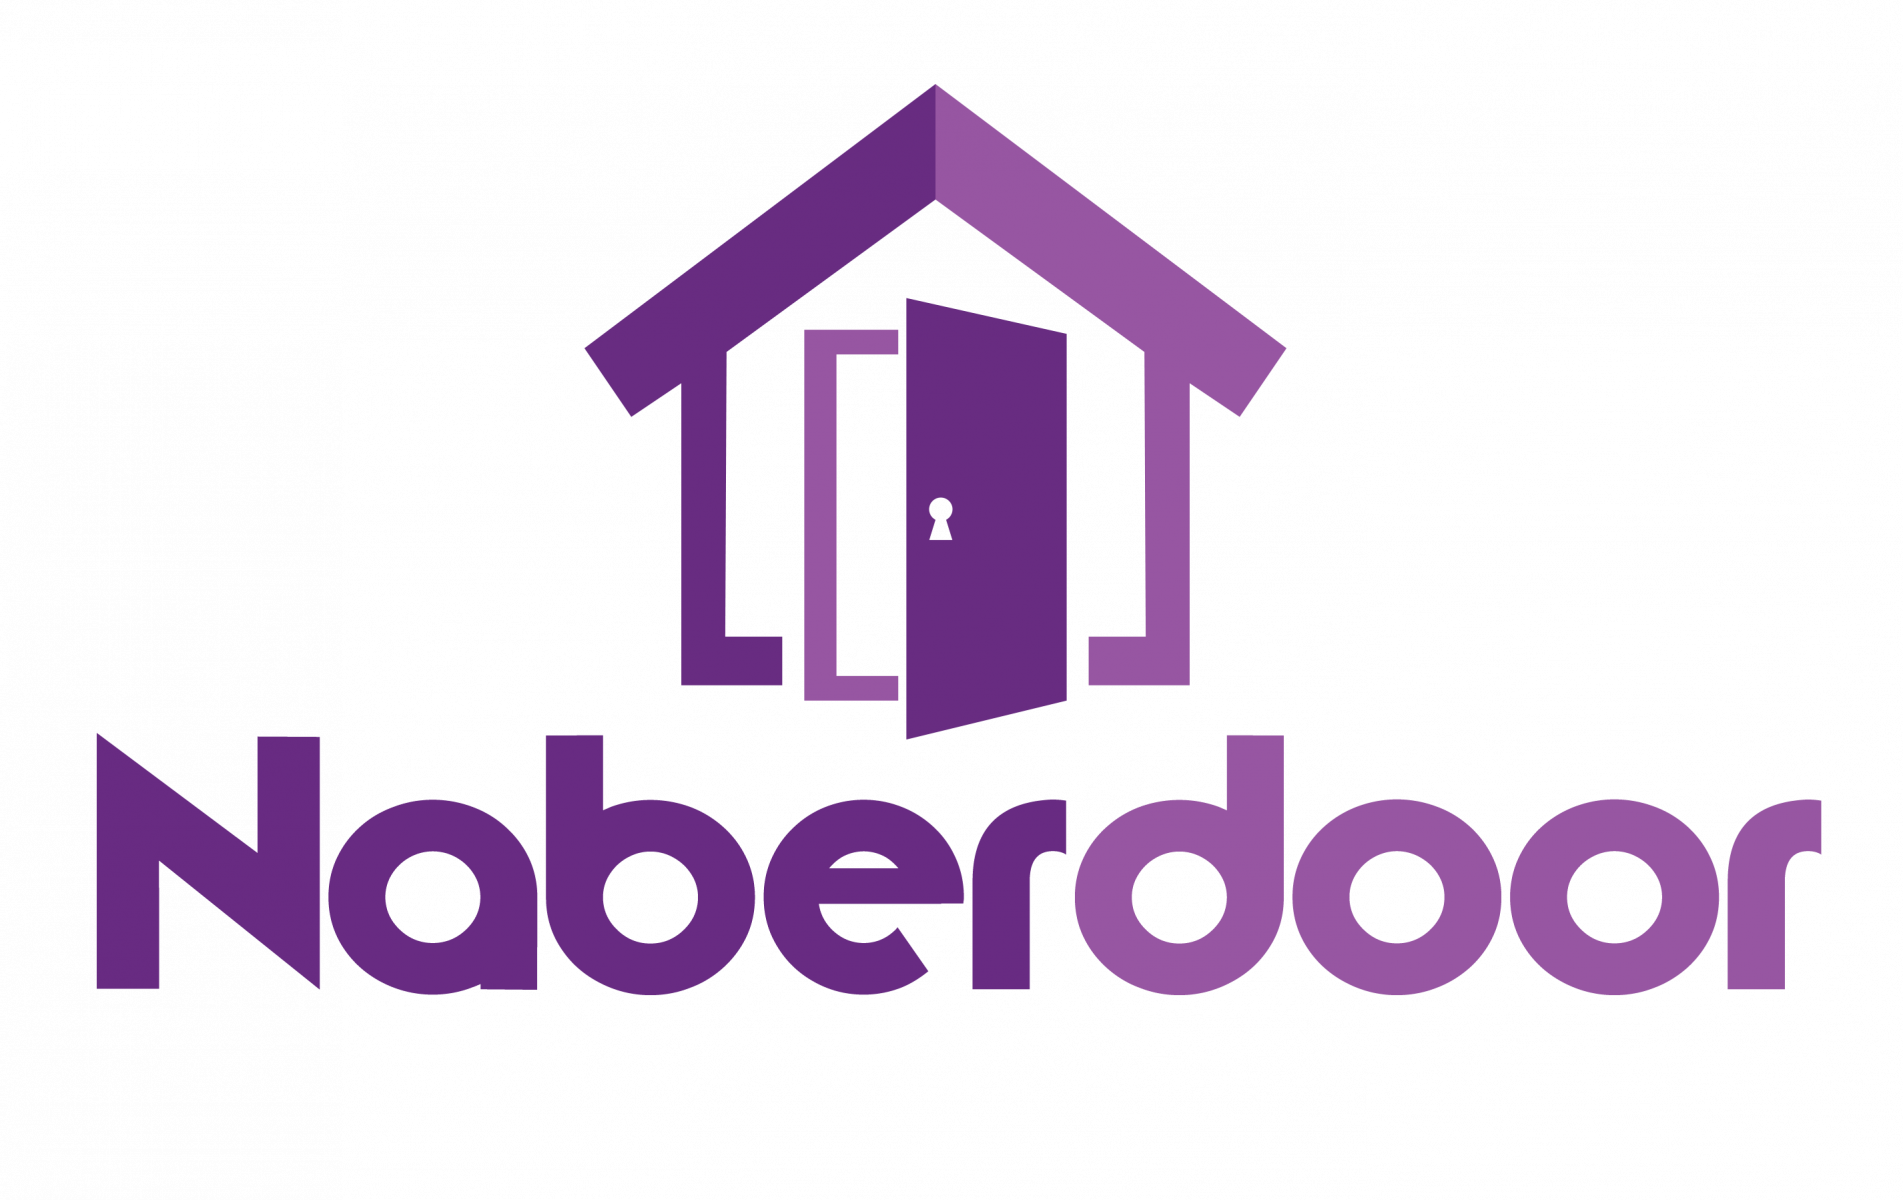 NaberDoor logo